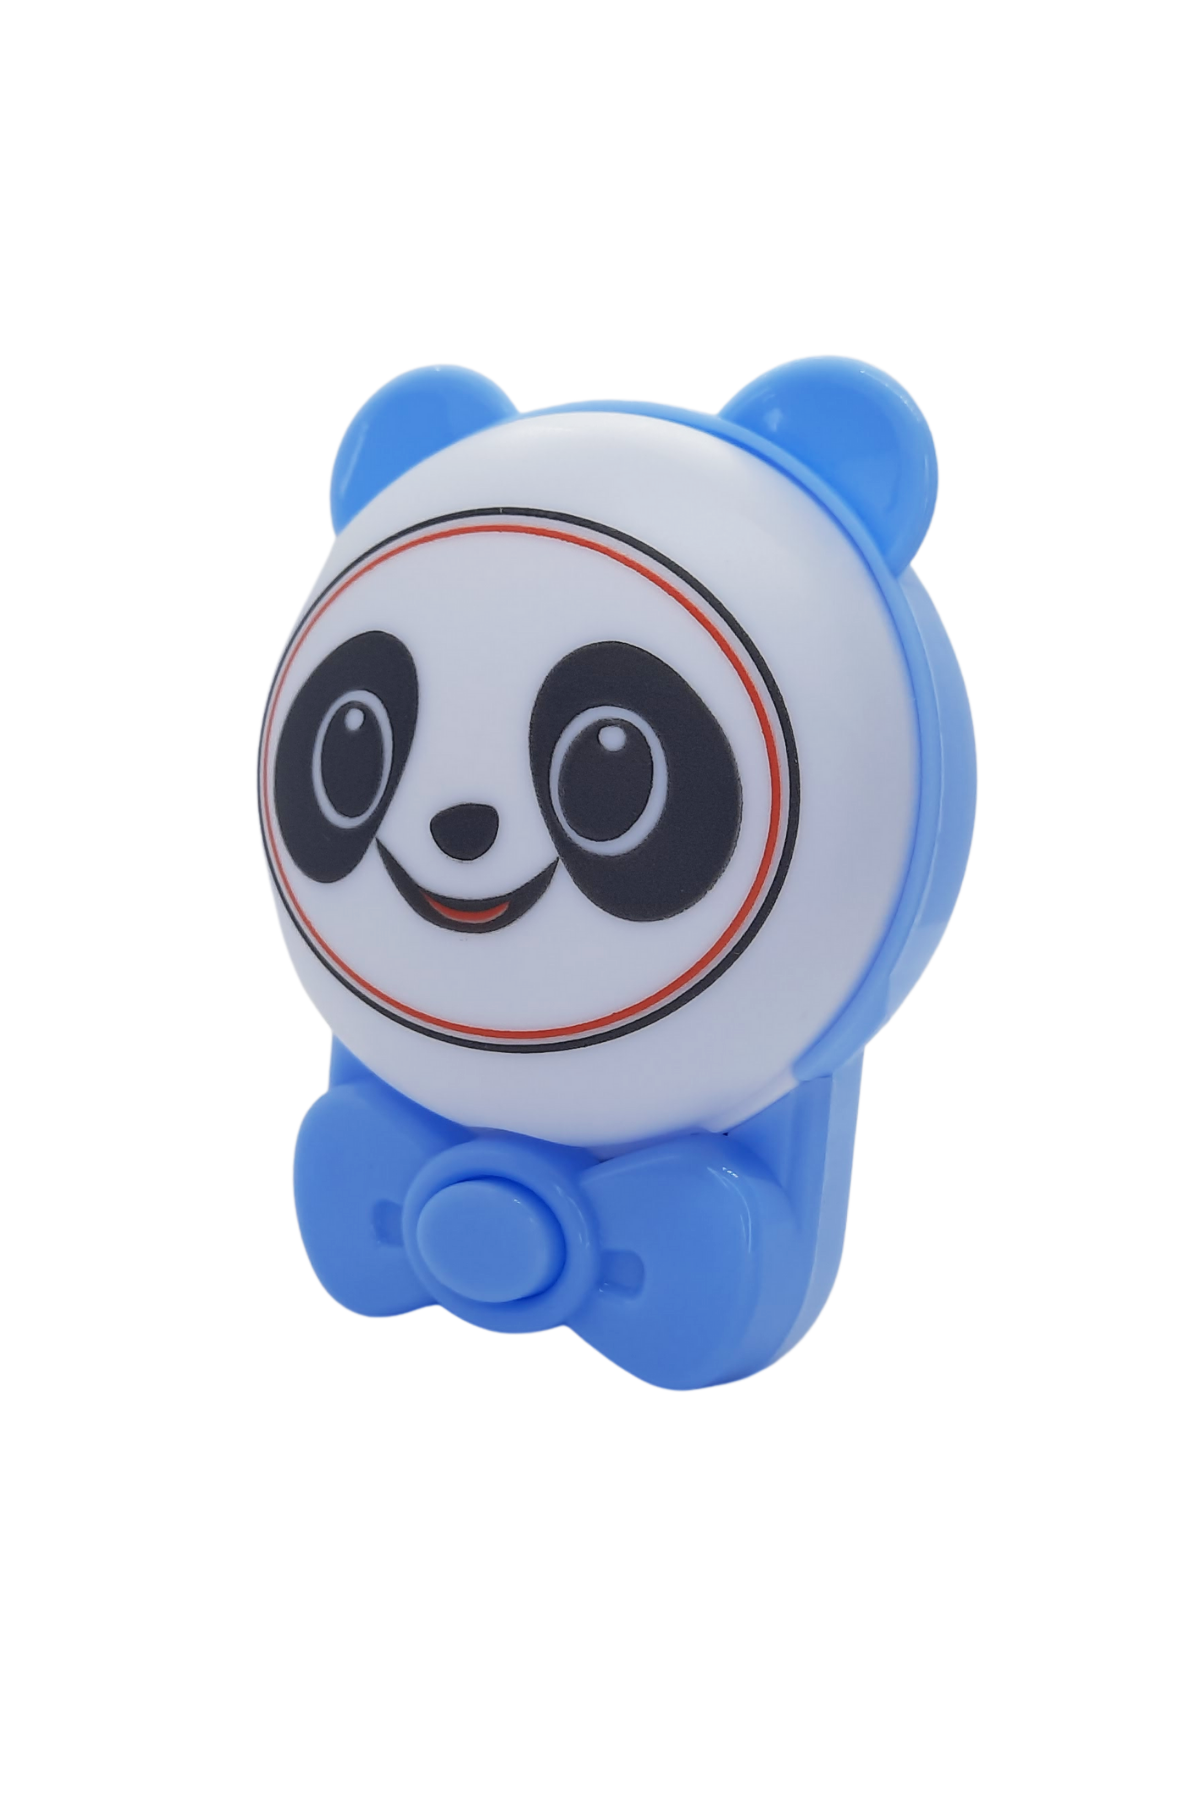 Panda Gece Lambası - Mavi